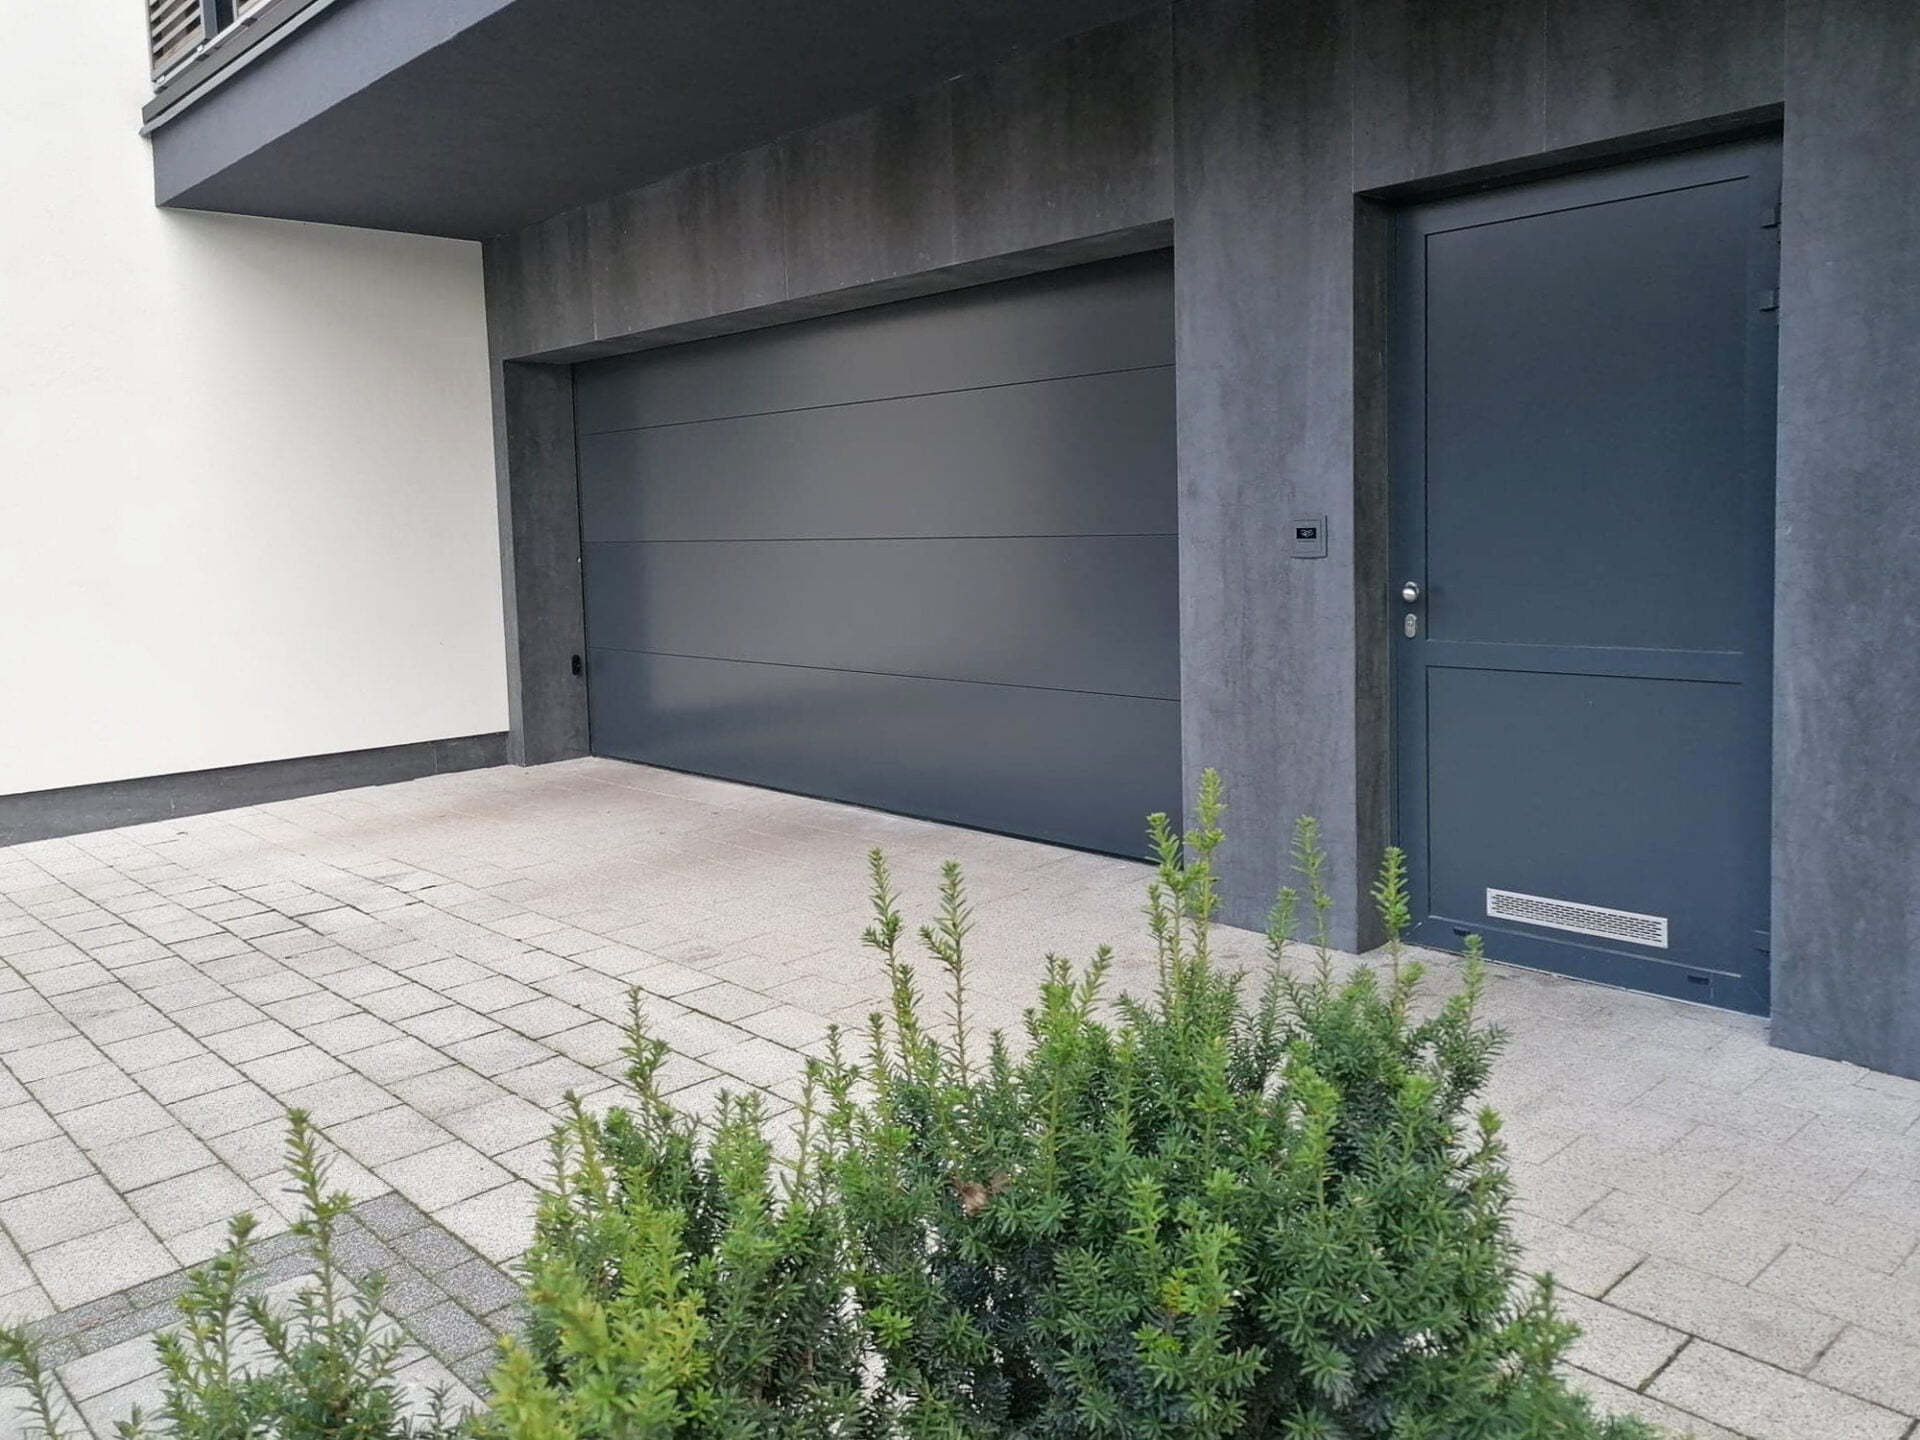 Brama garażowa segmentowa – idealne rozwiązanie dla małej przestrzeni